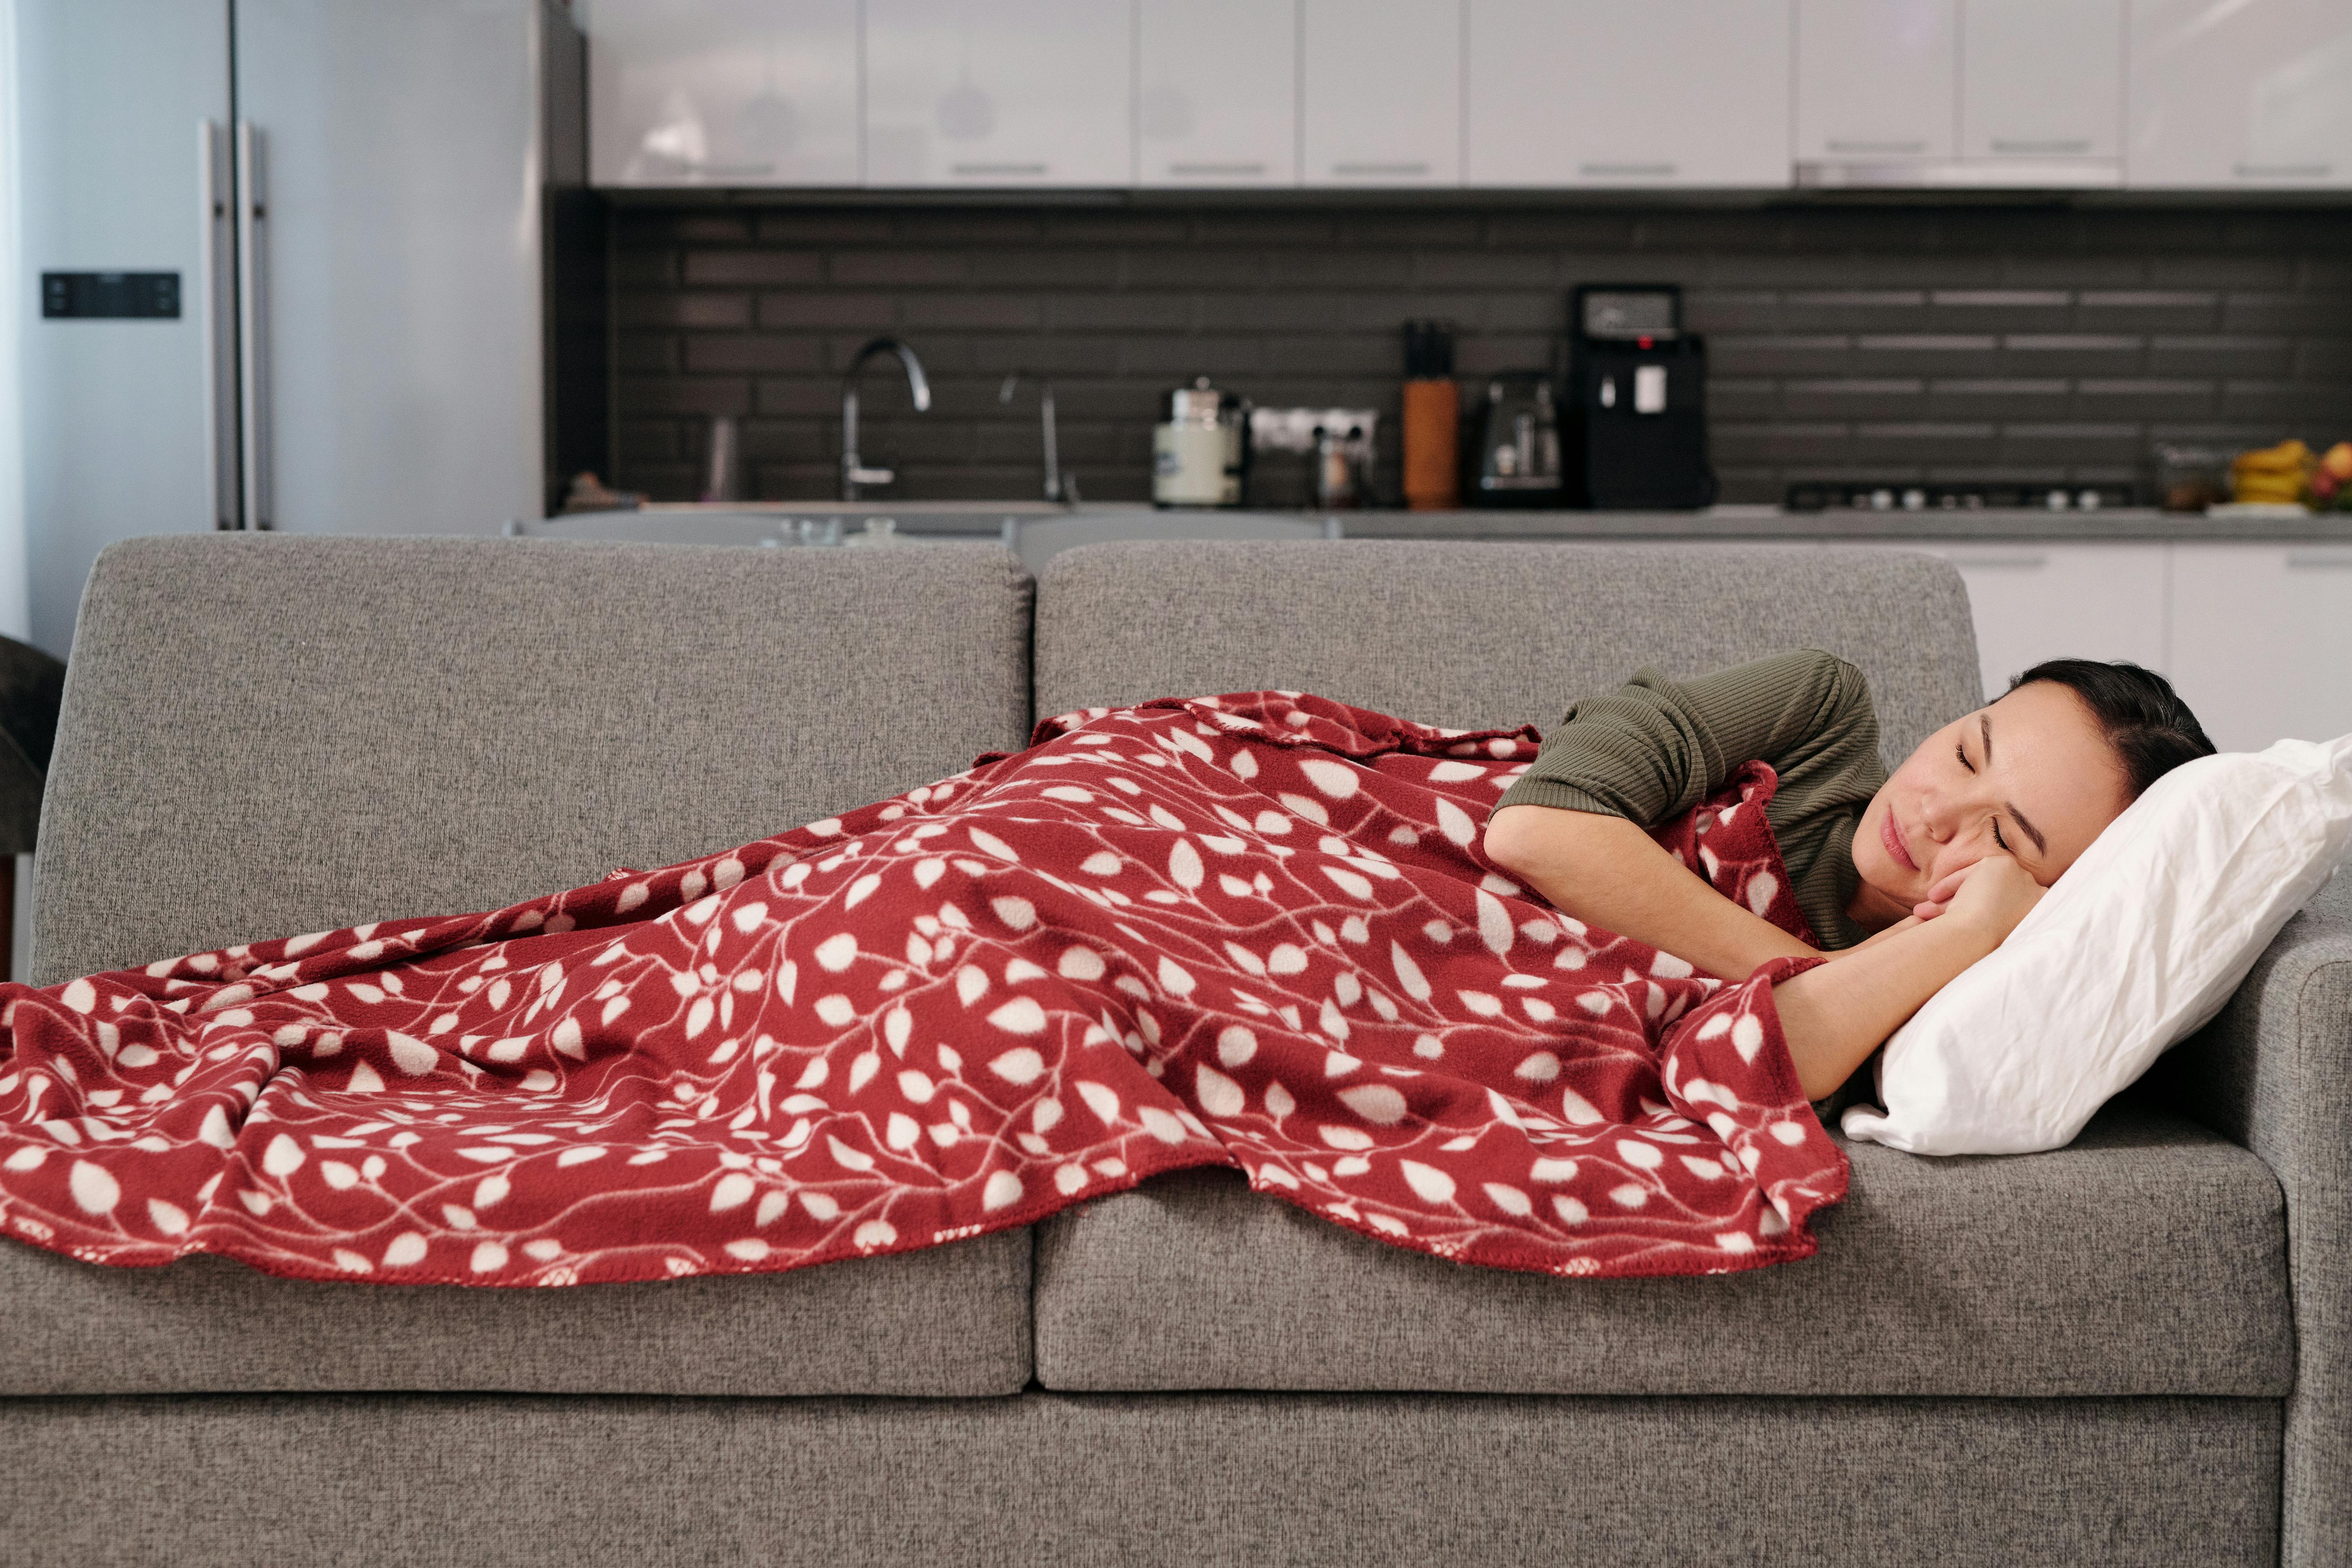 Una mujer durmiendo en un sofá | Fuente: Pexels